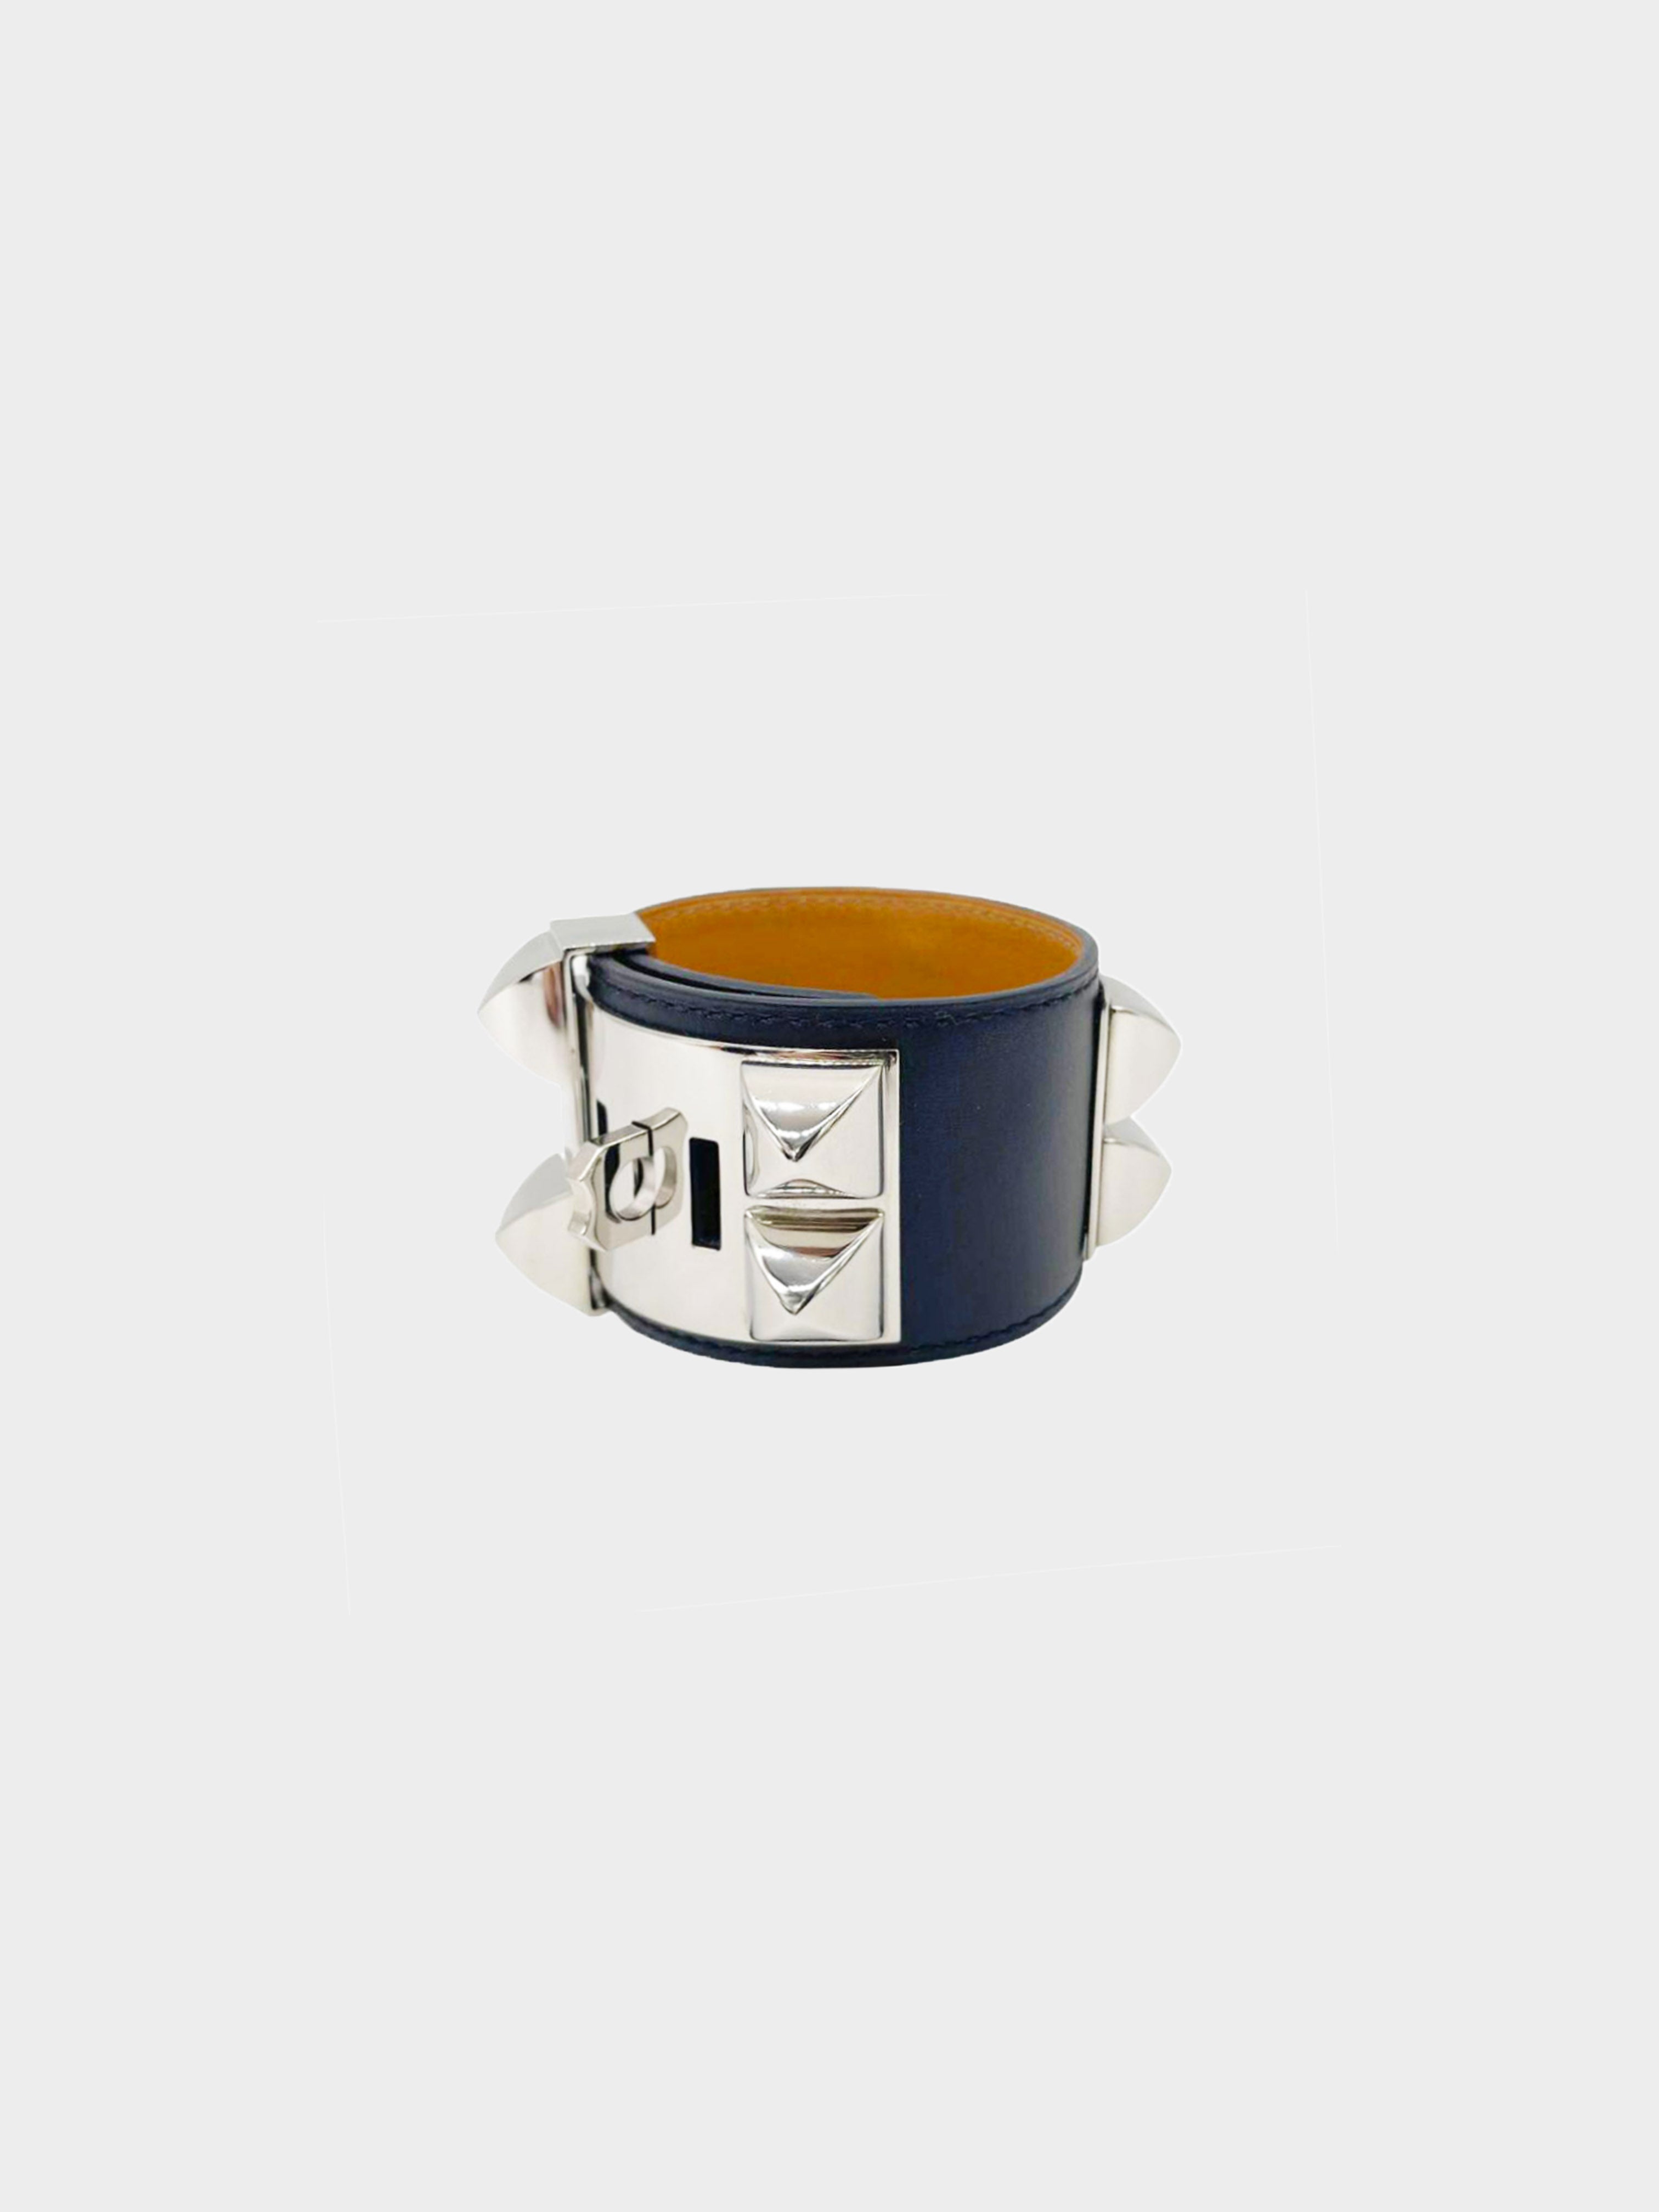 Hermès 2014 Collier De Chien Bracelet